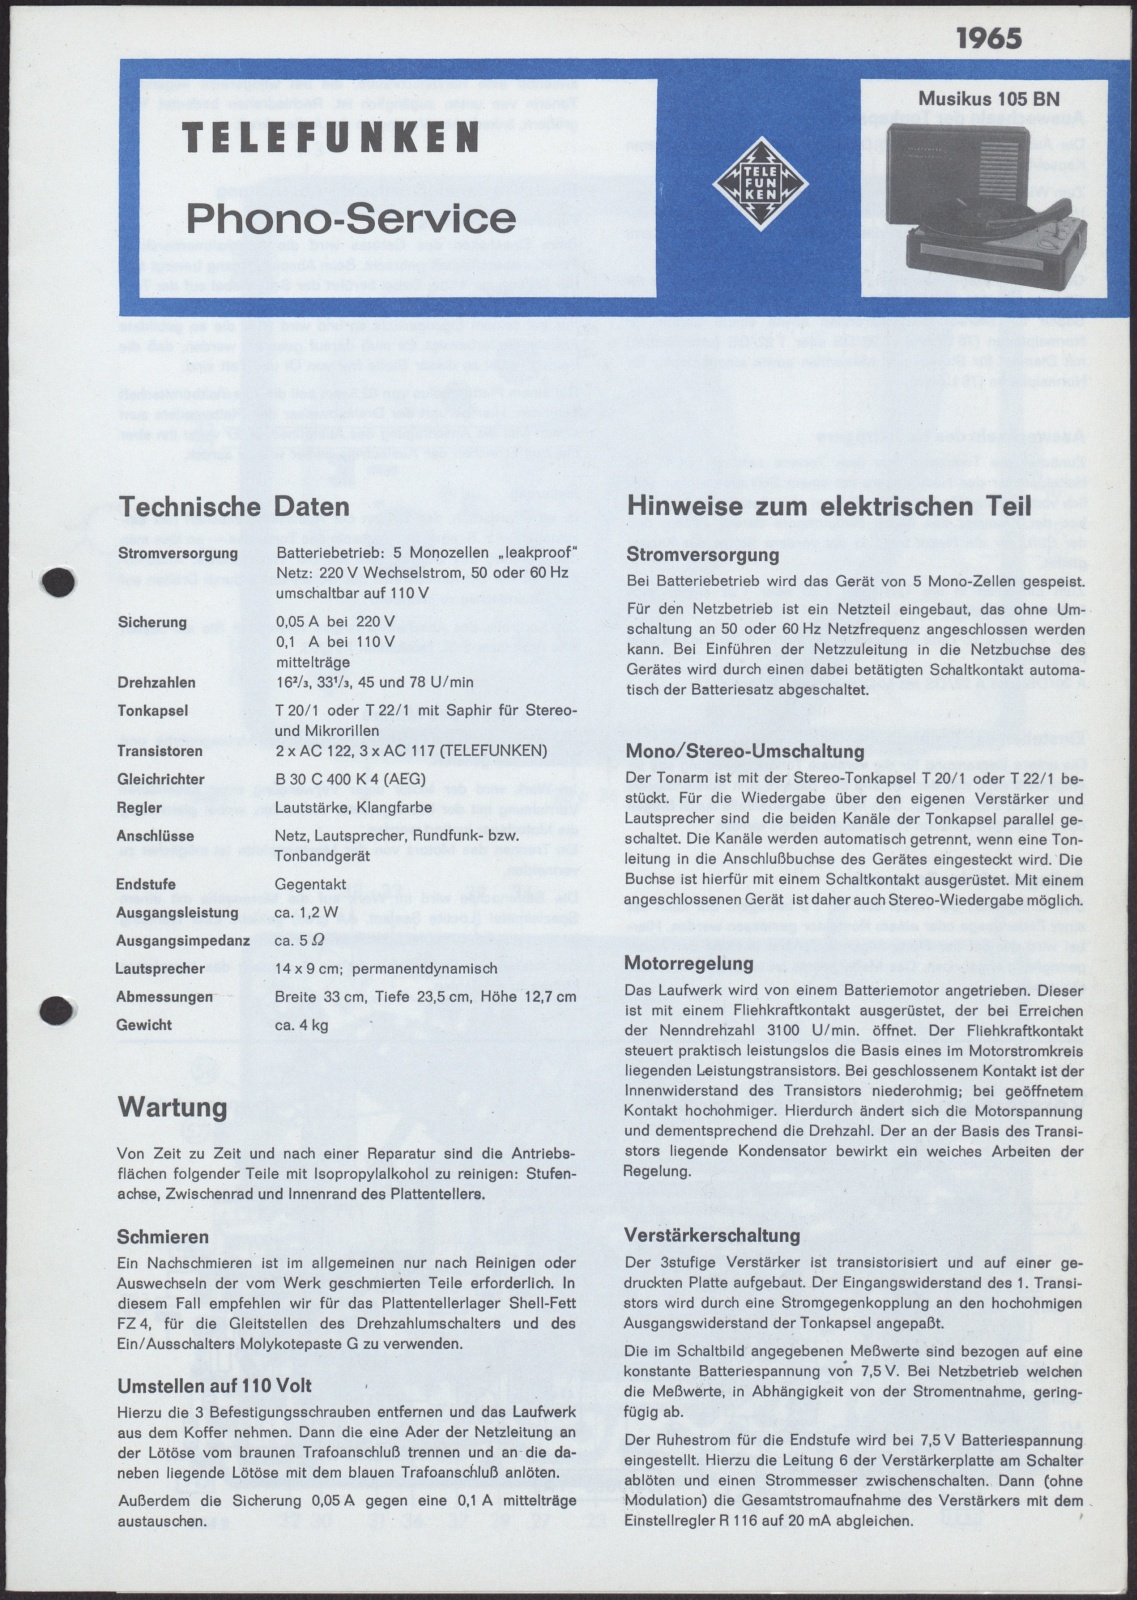 Bedienungsanleitung: Telefunken Phono-Service Musikus 105 BN (Stiftung Deutsches Technikmuseum Berlin CC0)